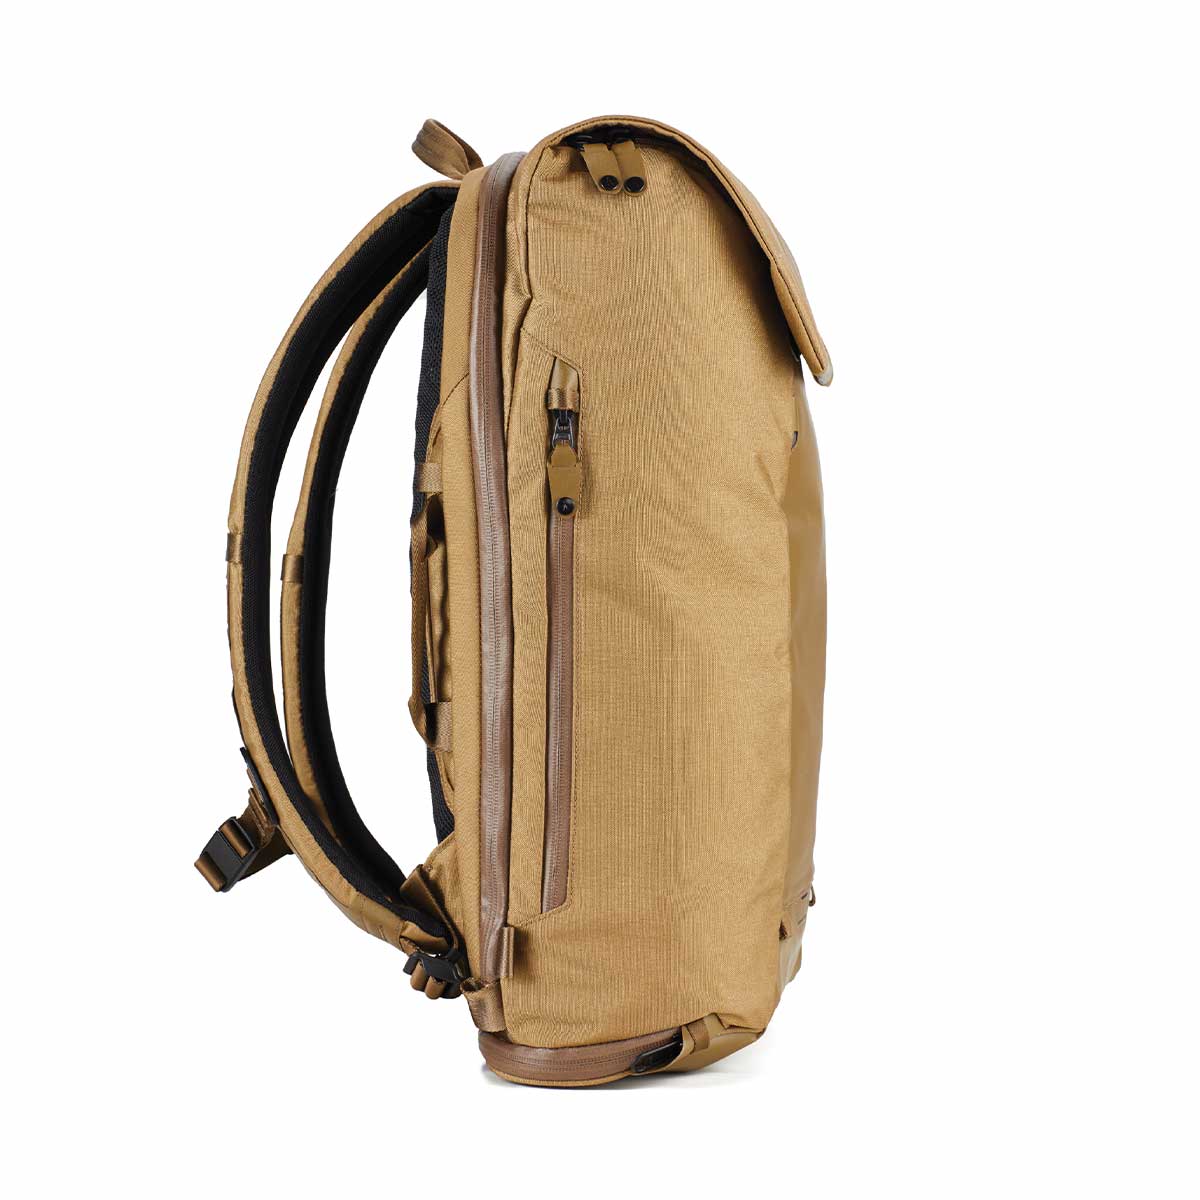 Boundary Supply Errant Pack Backpack Starter Kit (Hymassa Tan)